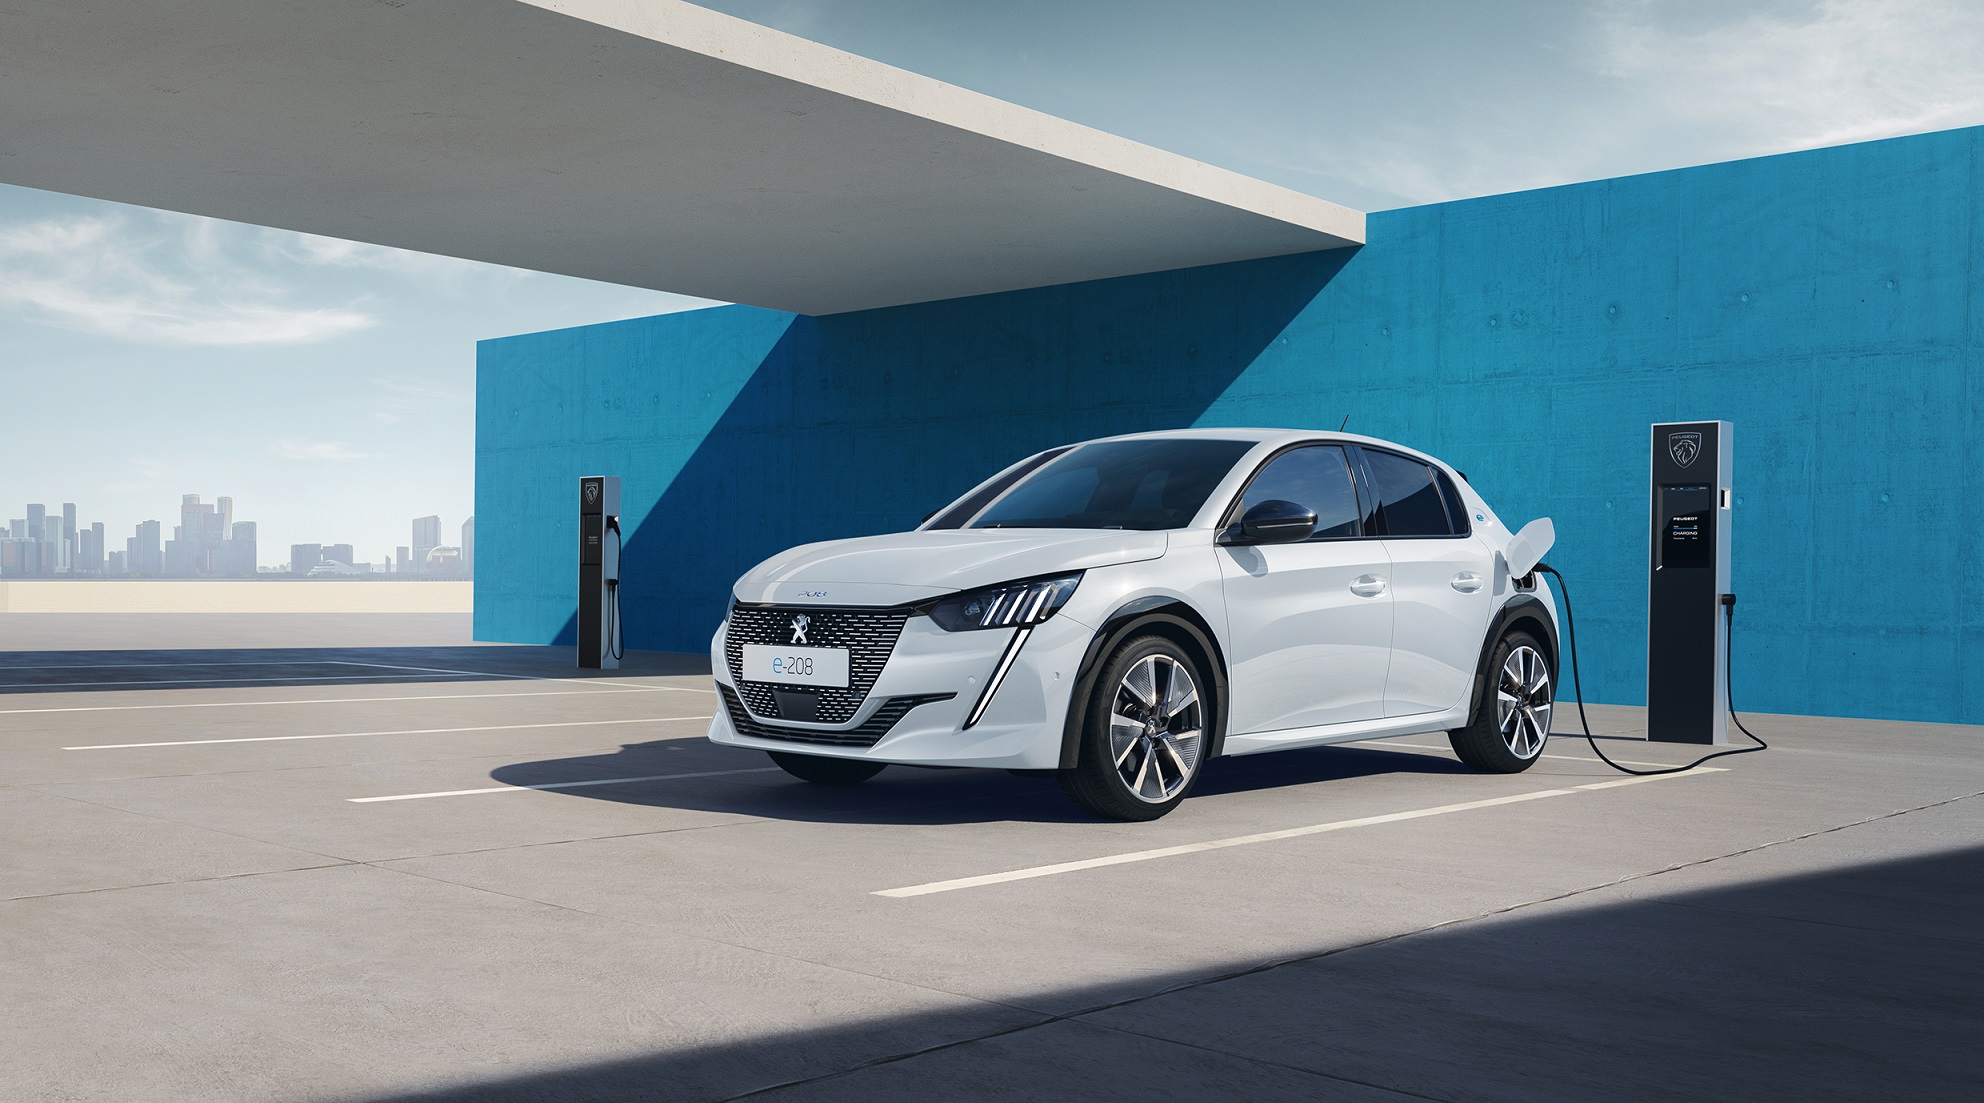 Peugeot v roce 2022 ovládl trh malých elektromobilů, do roku 2030 chce být největší elektrickou značkou v Evropě